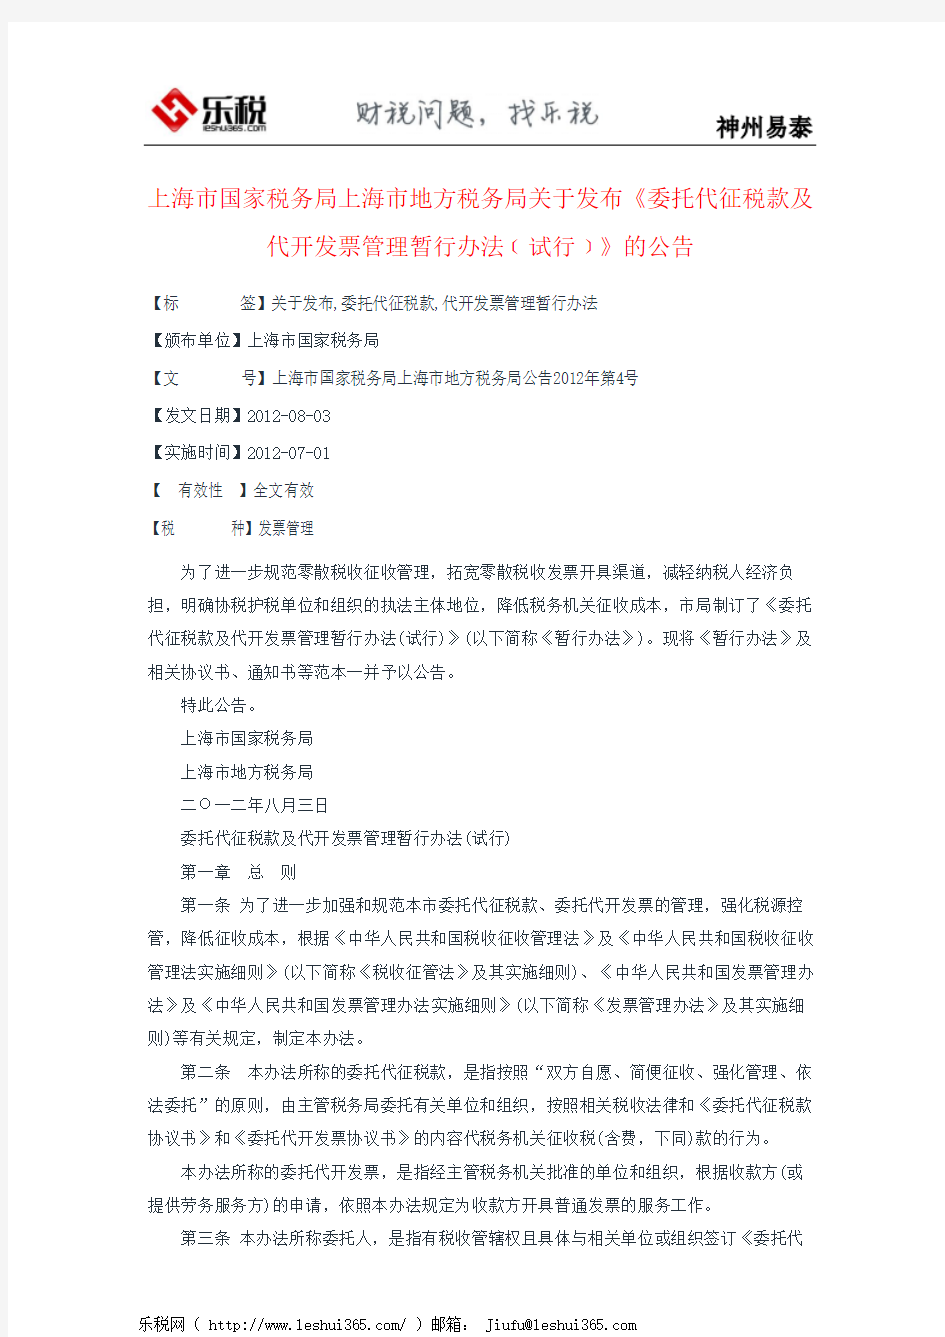 上海市国家税务局上海市地方税务局关于发布《委托代征税款及代开